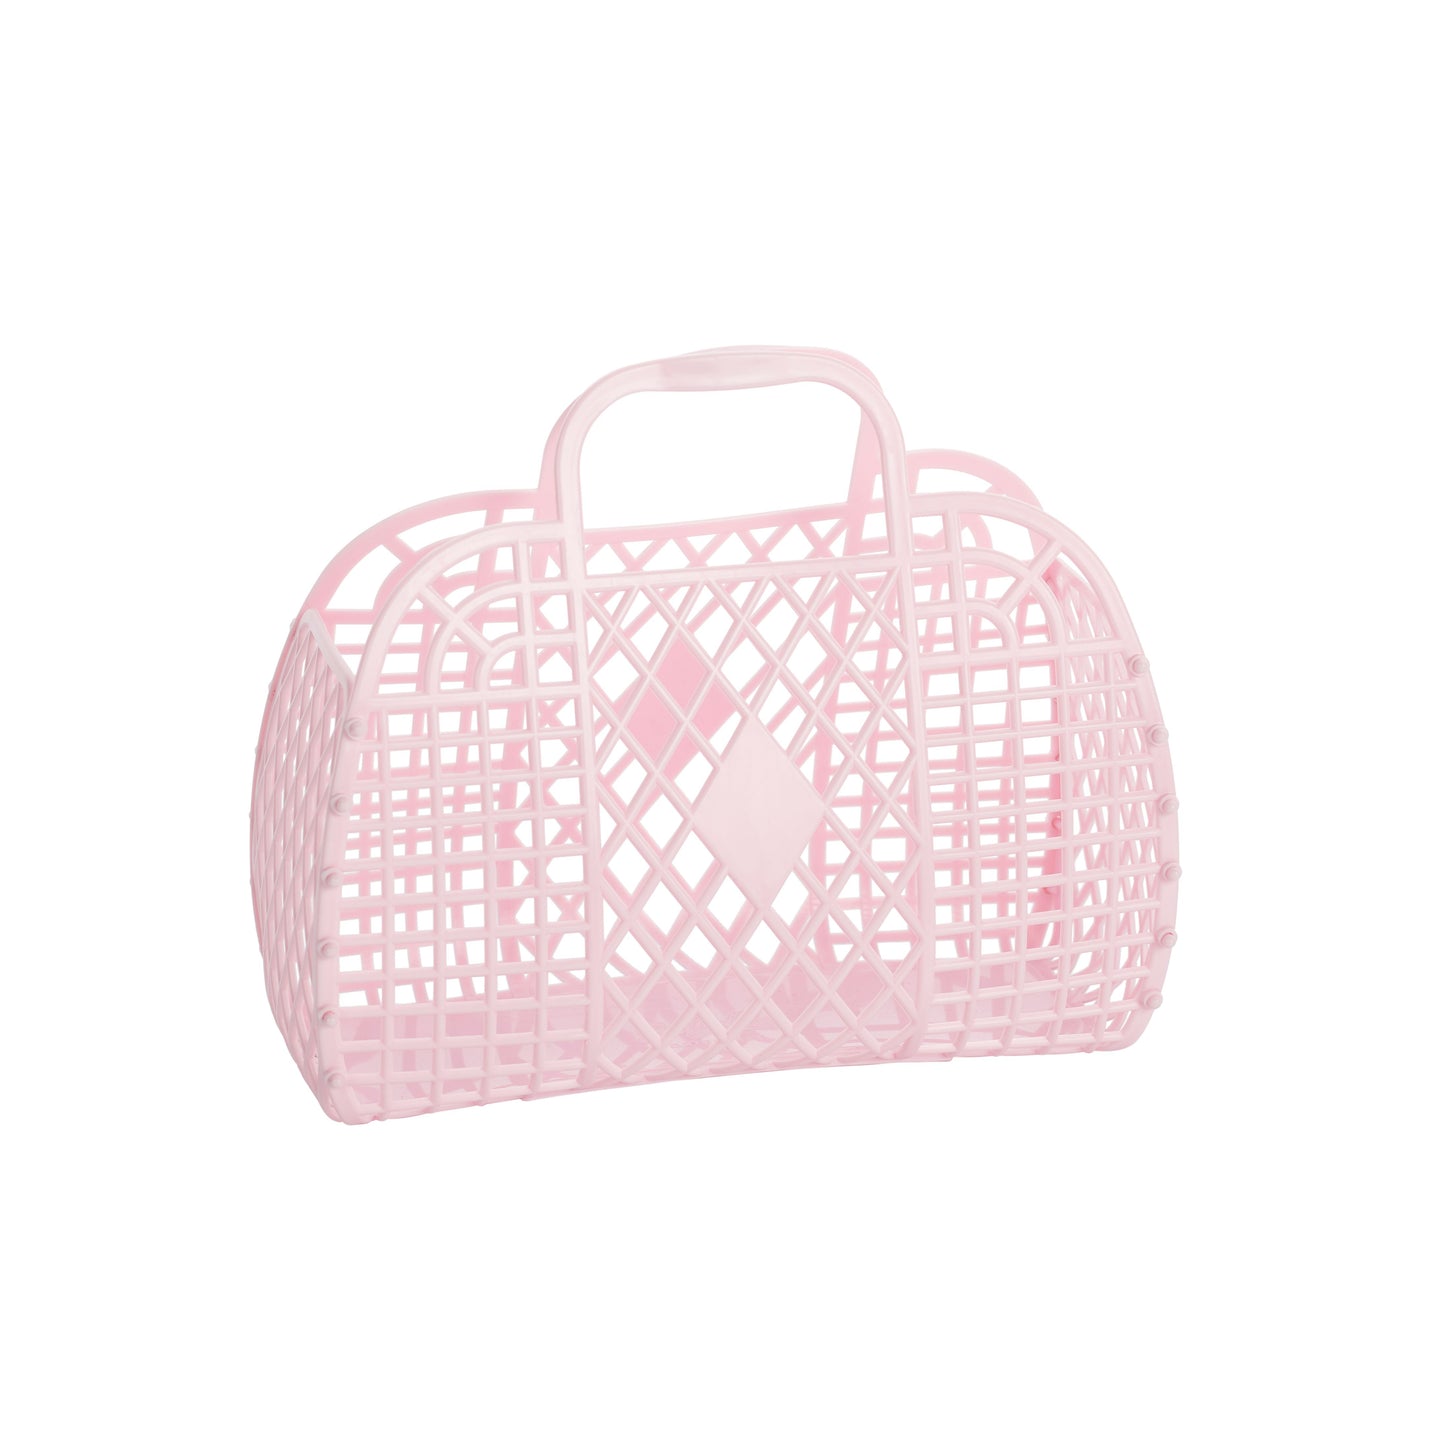 Sunjellies - Small Retro Basket - Pink